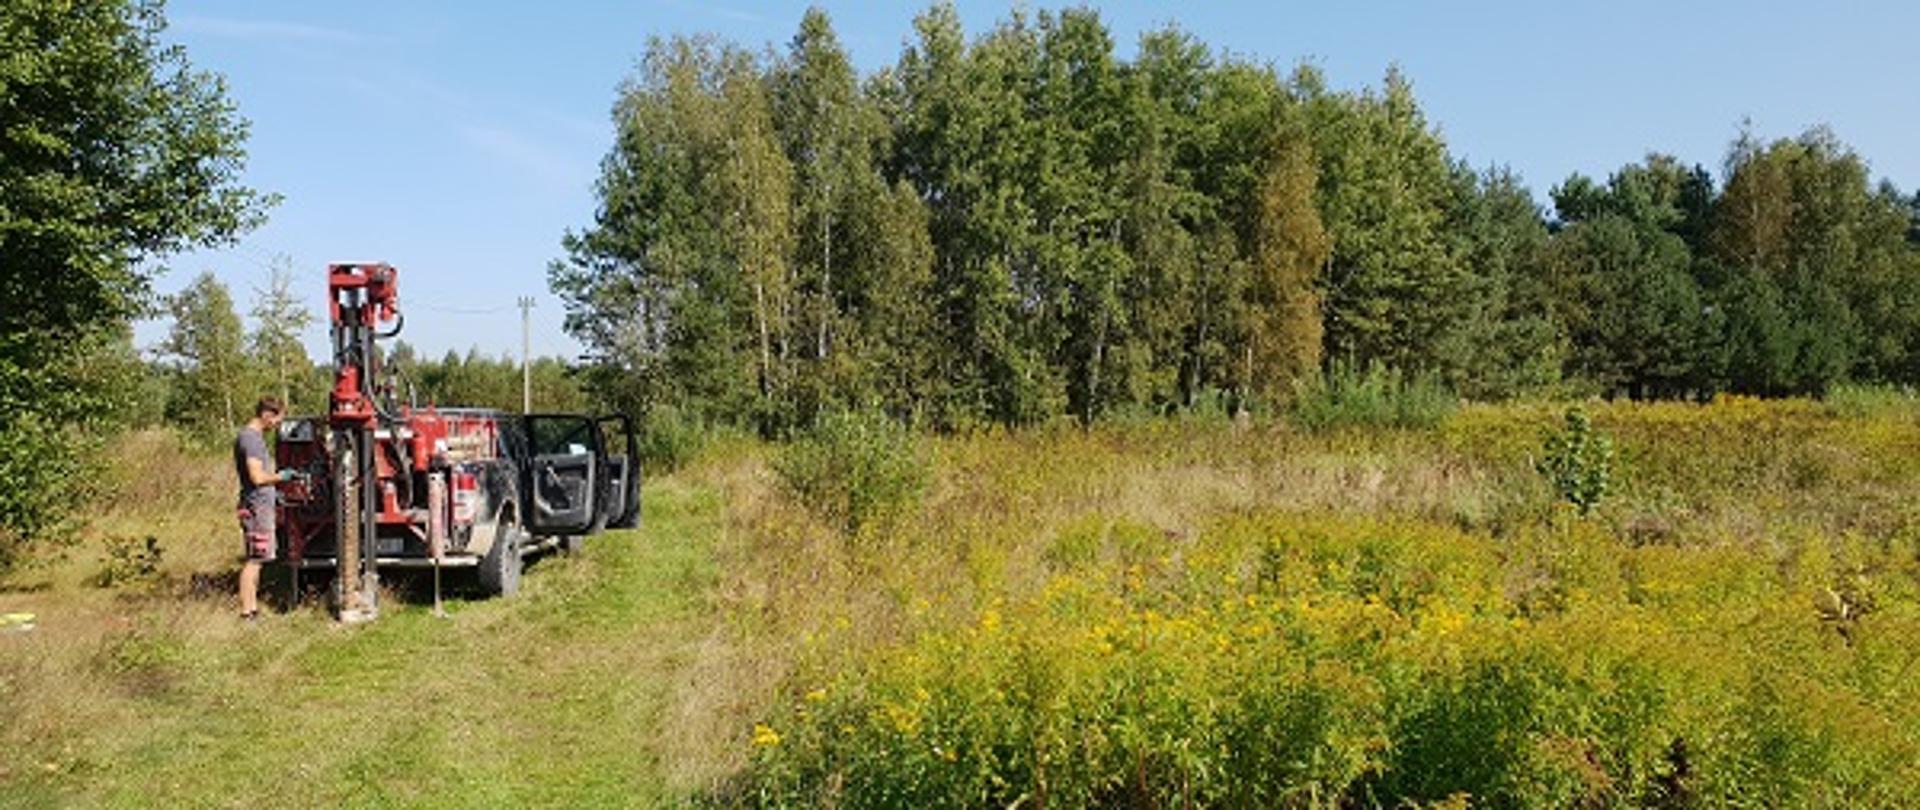 Na zdjęciu znajduje się porośnięta trawami działka w oddali młody lasek. W lewej części fotografii znajduje się samochód osobowy wraz ze specjalistycznym sprzętem przy pomocy którego osoba na zdjęciu wykonuje prace geotechniczne. 